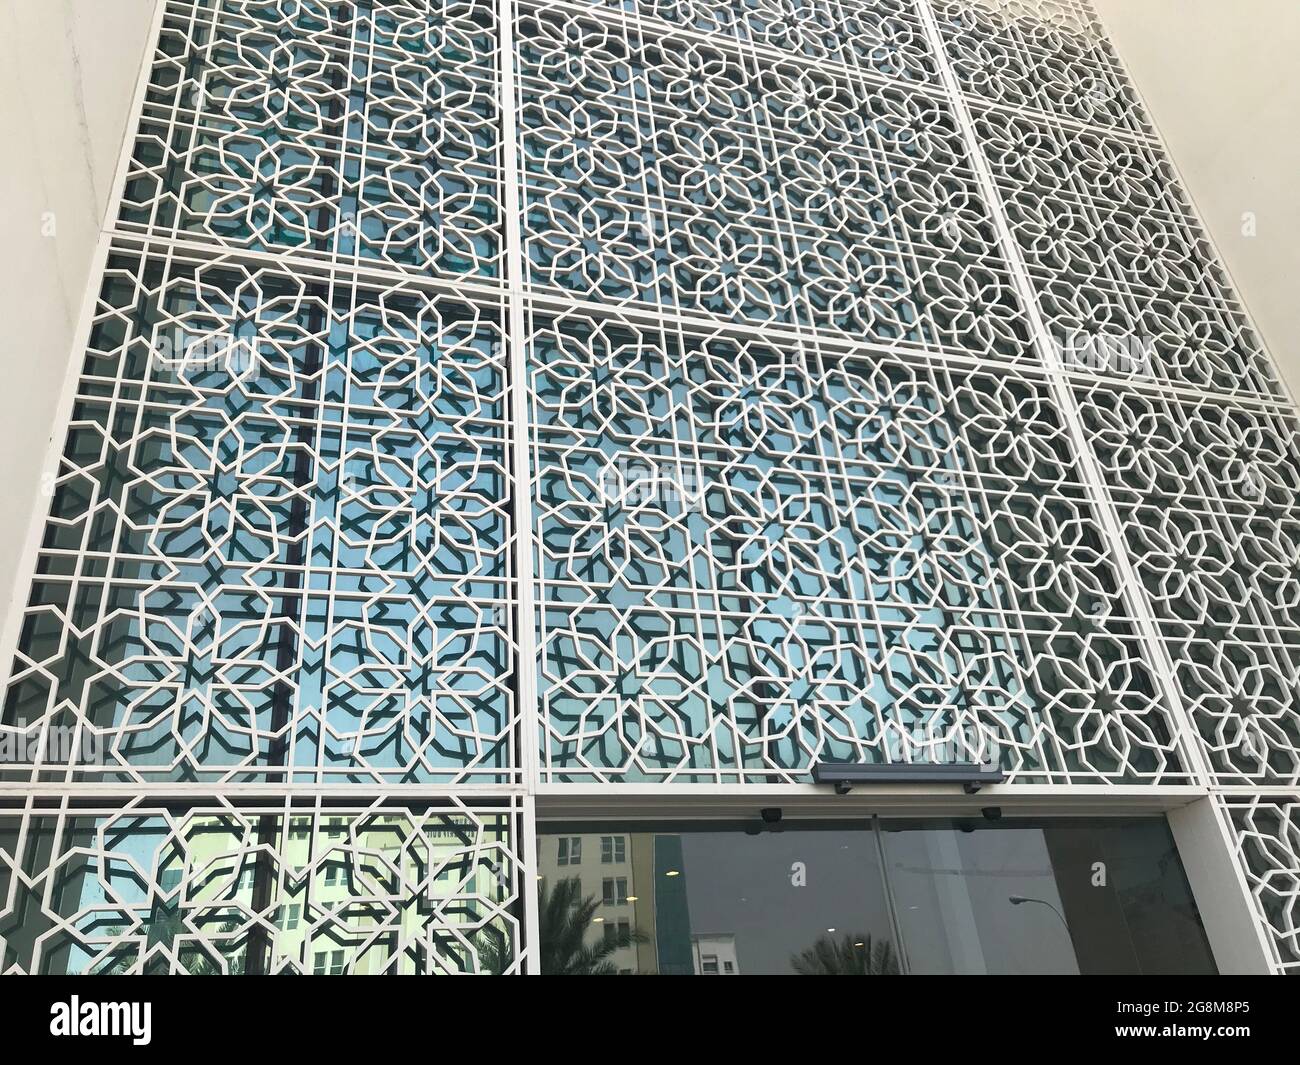 Schöne und unterschiedliche Außenwand Glasverkleidungen für die Frontansicht eines Einkaufsmall-Gebäudes und die Paneele sind durch Aluminiumrahmen unterteilt Stockfoto